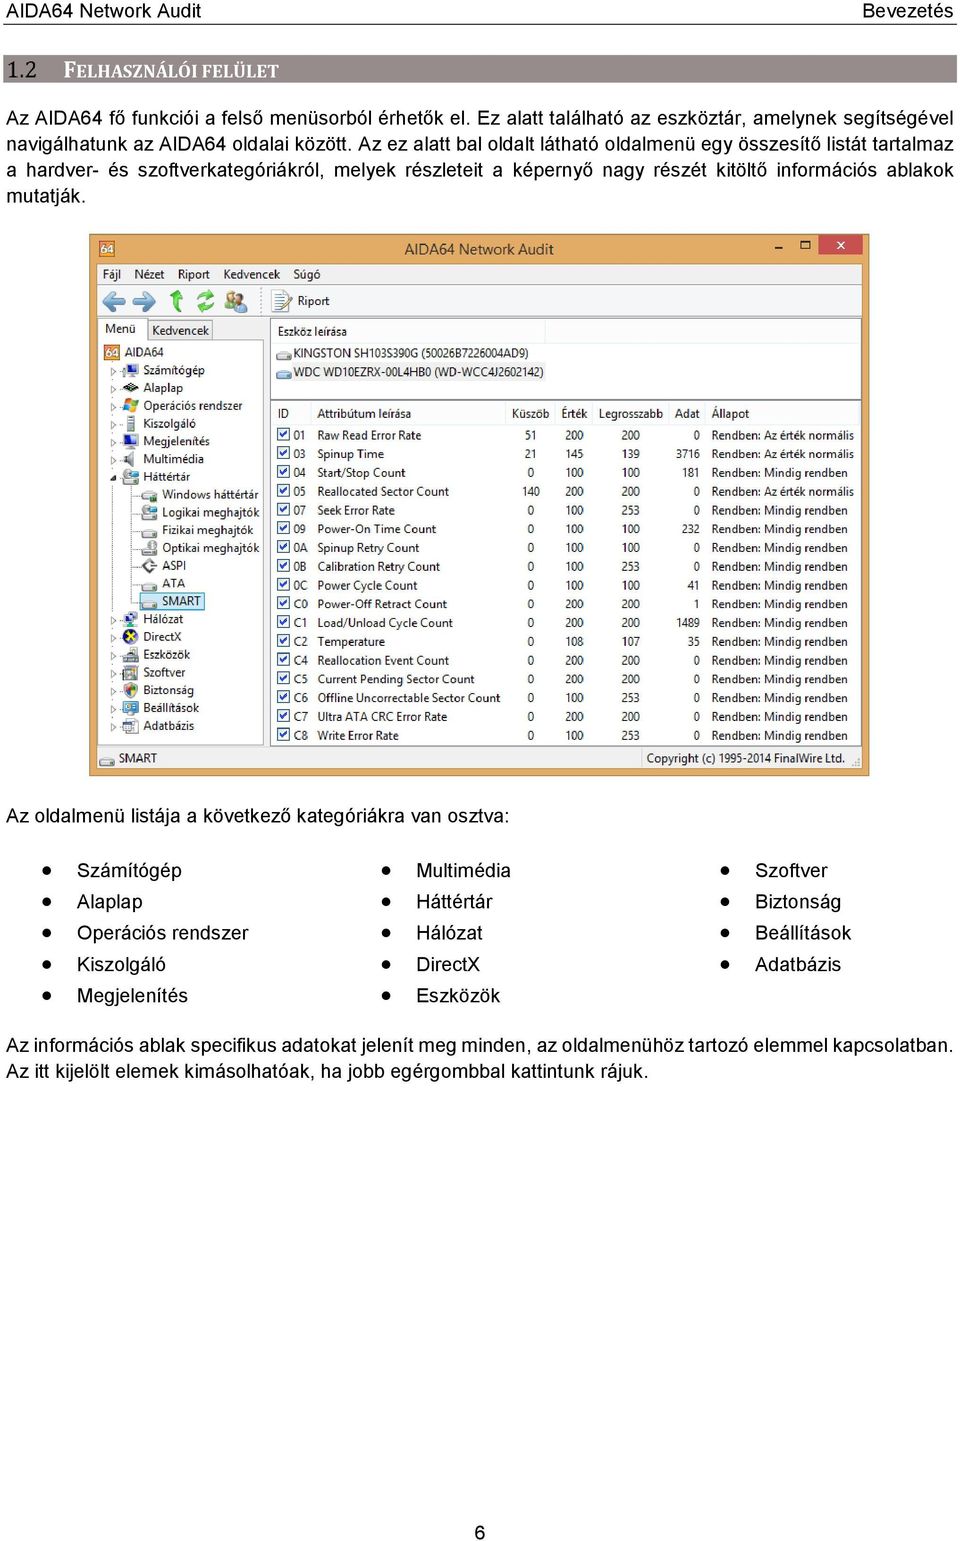 Az oldalmenü listája a következő kategóriákra van osztva: Számítógép Alaplap Operációs rendszer Kiszolgáló Megjelenítés Multimédia Háttértár Hálózat DirectX Eszközök Szoftver Biztonság